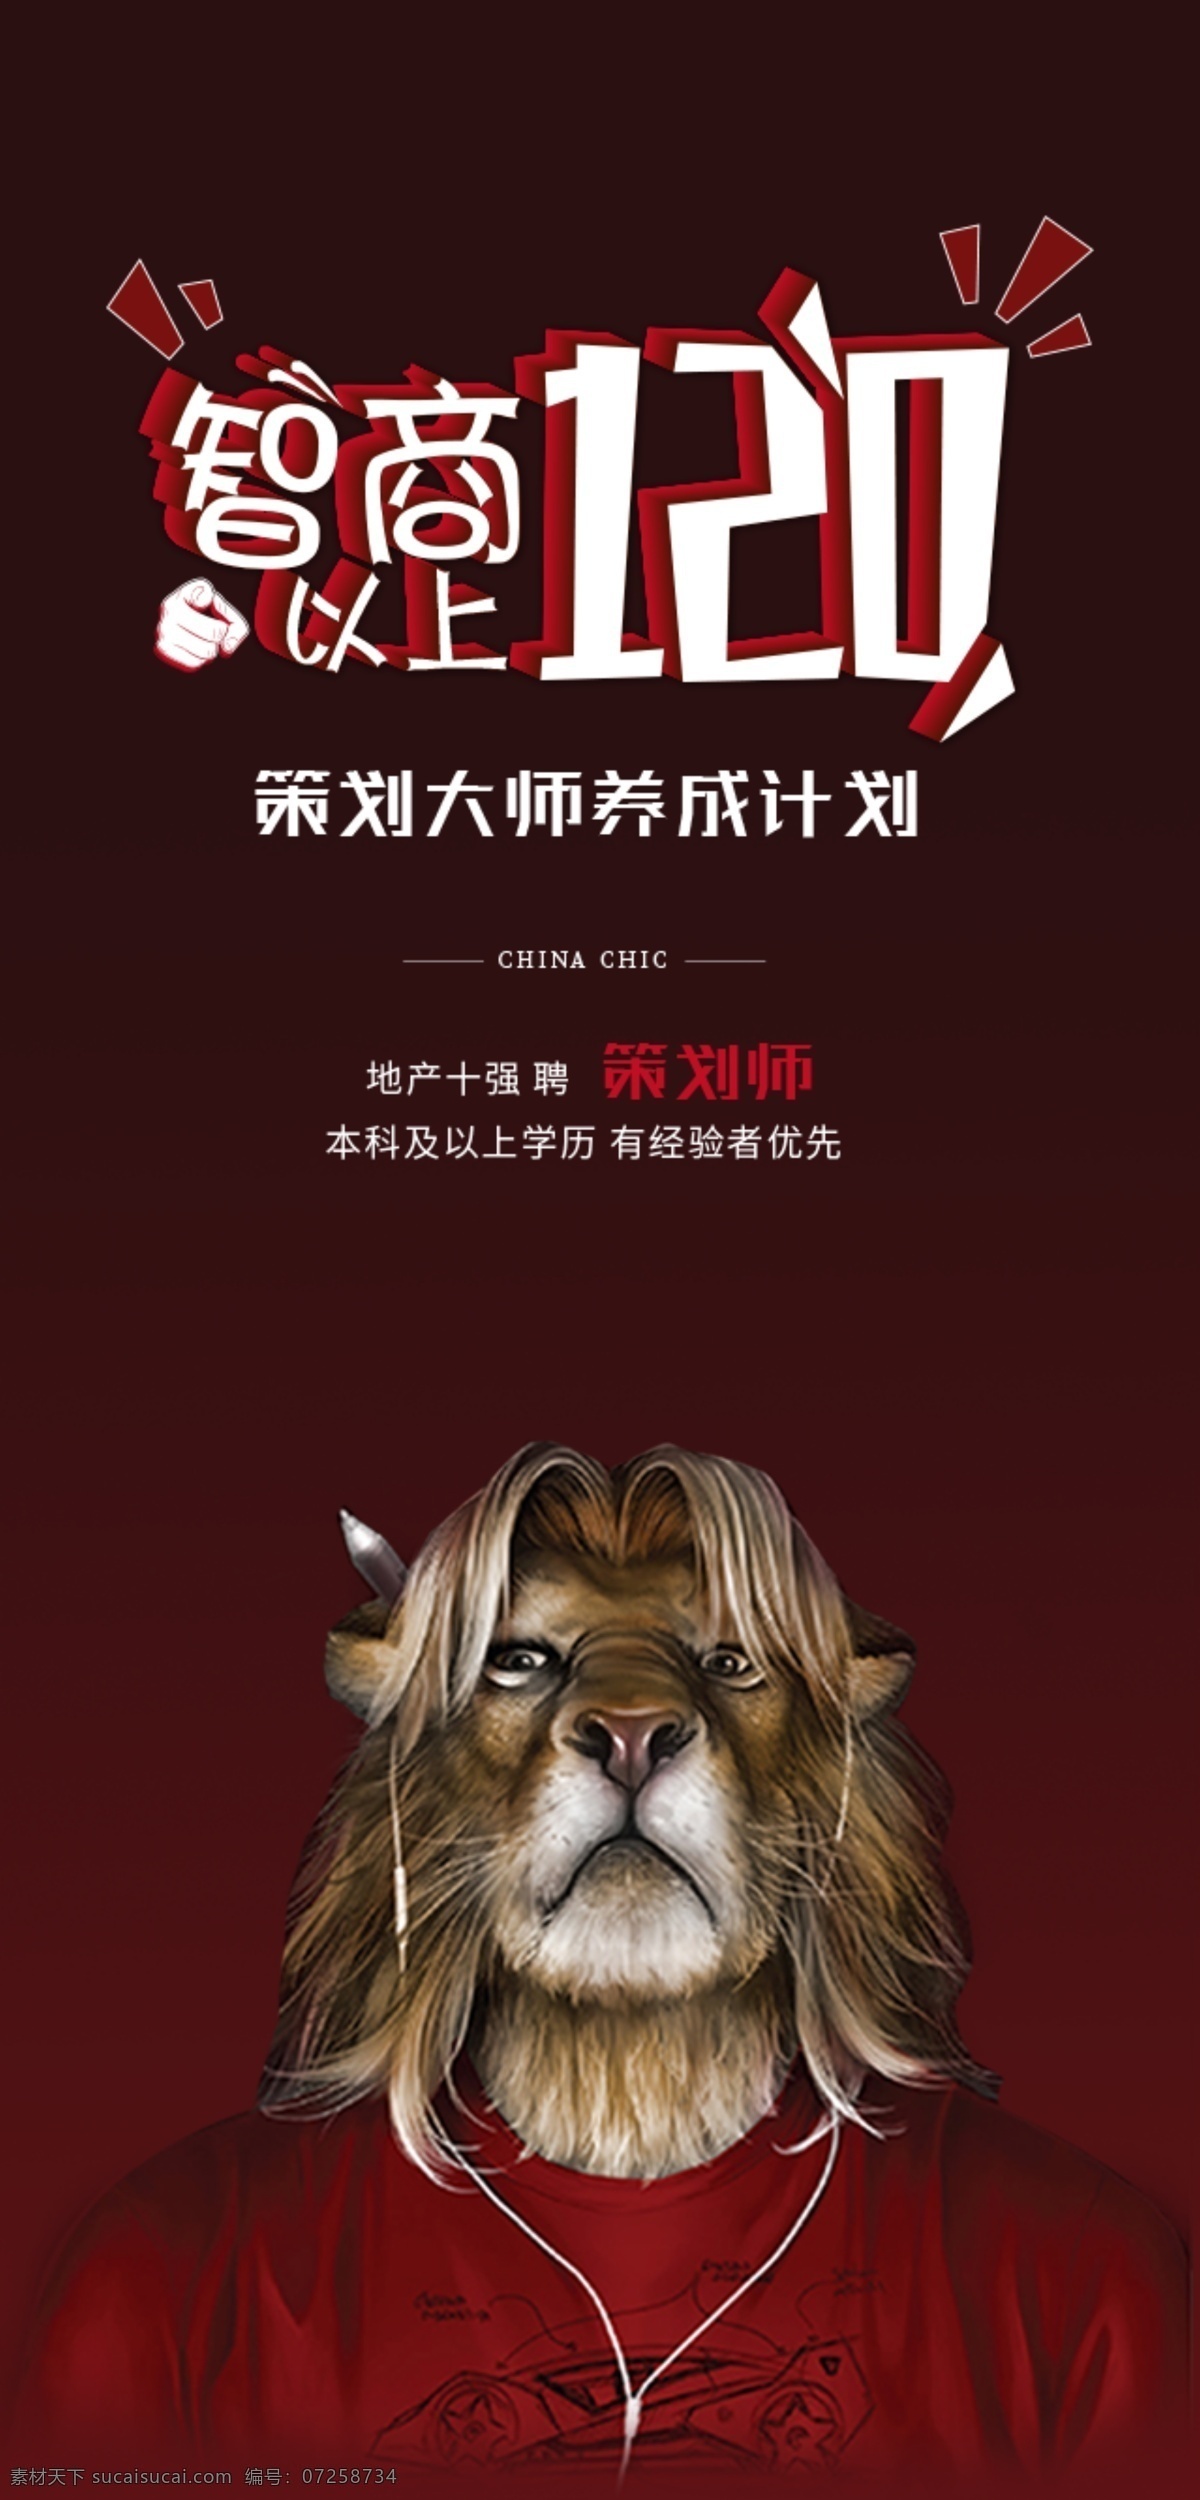 招聘海报 创意招聘 动物 狮子 搞怪 红色